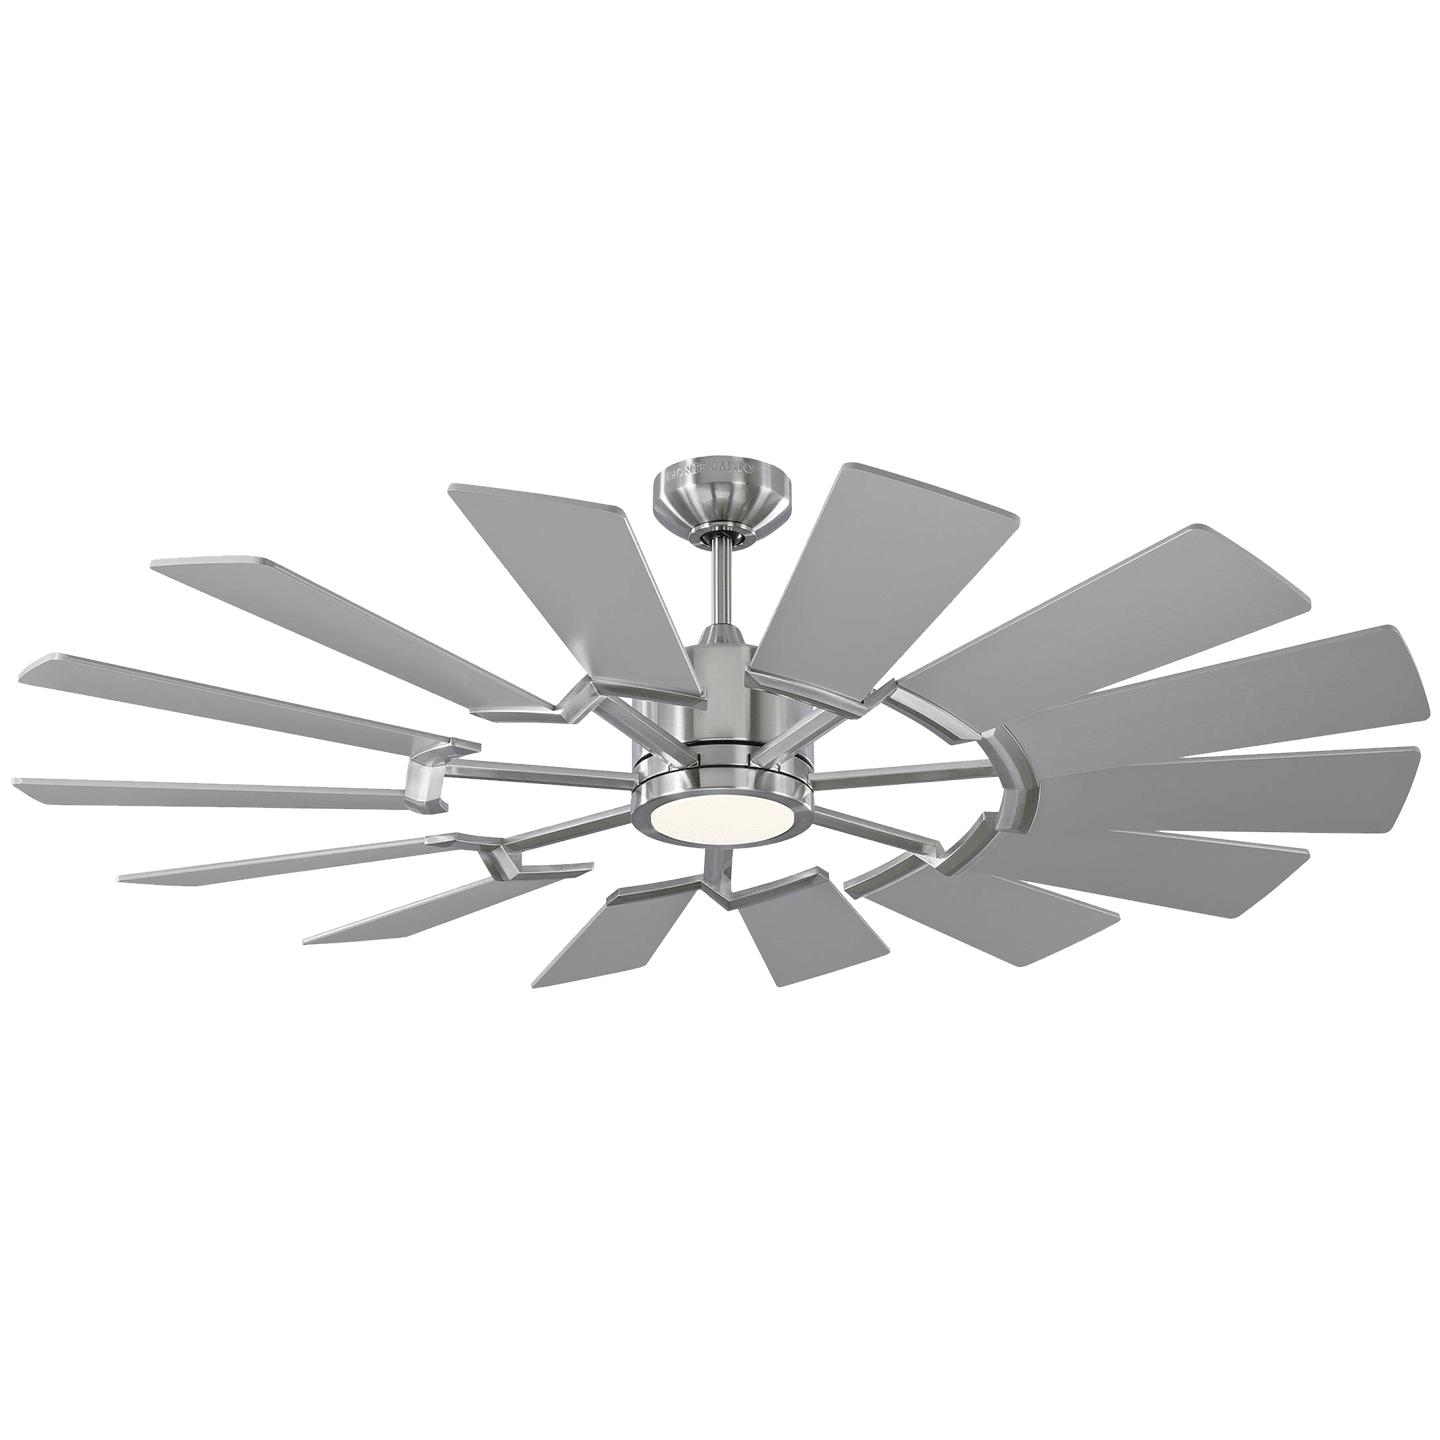 Купить Потолочный вентилятор Prairie 52" LED Ceiling Fan в интернет-магазине roooms.ru